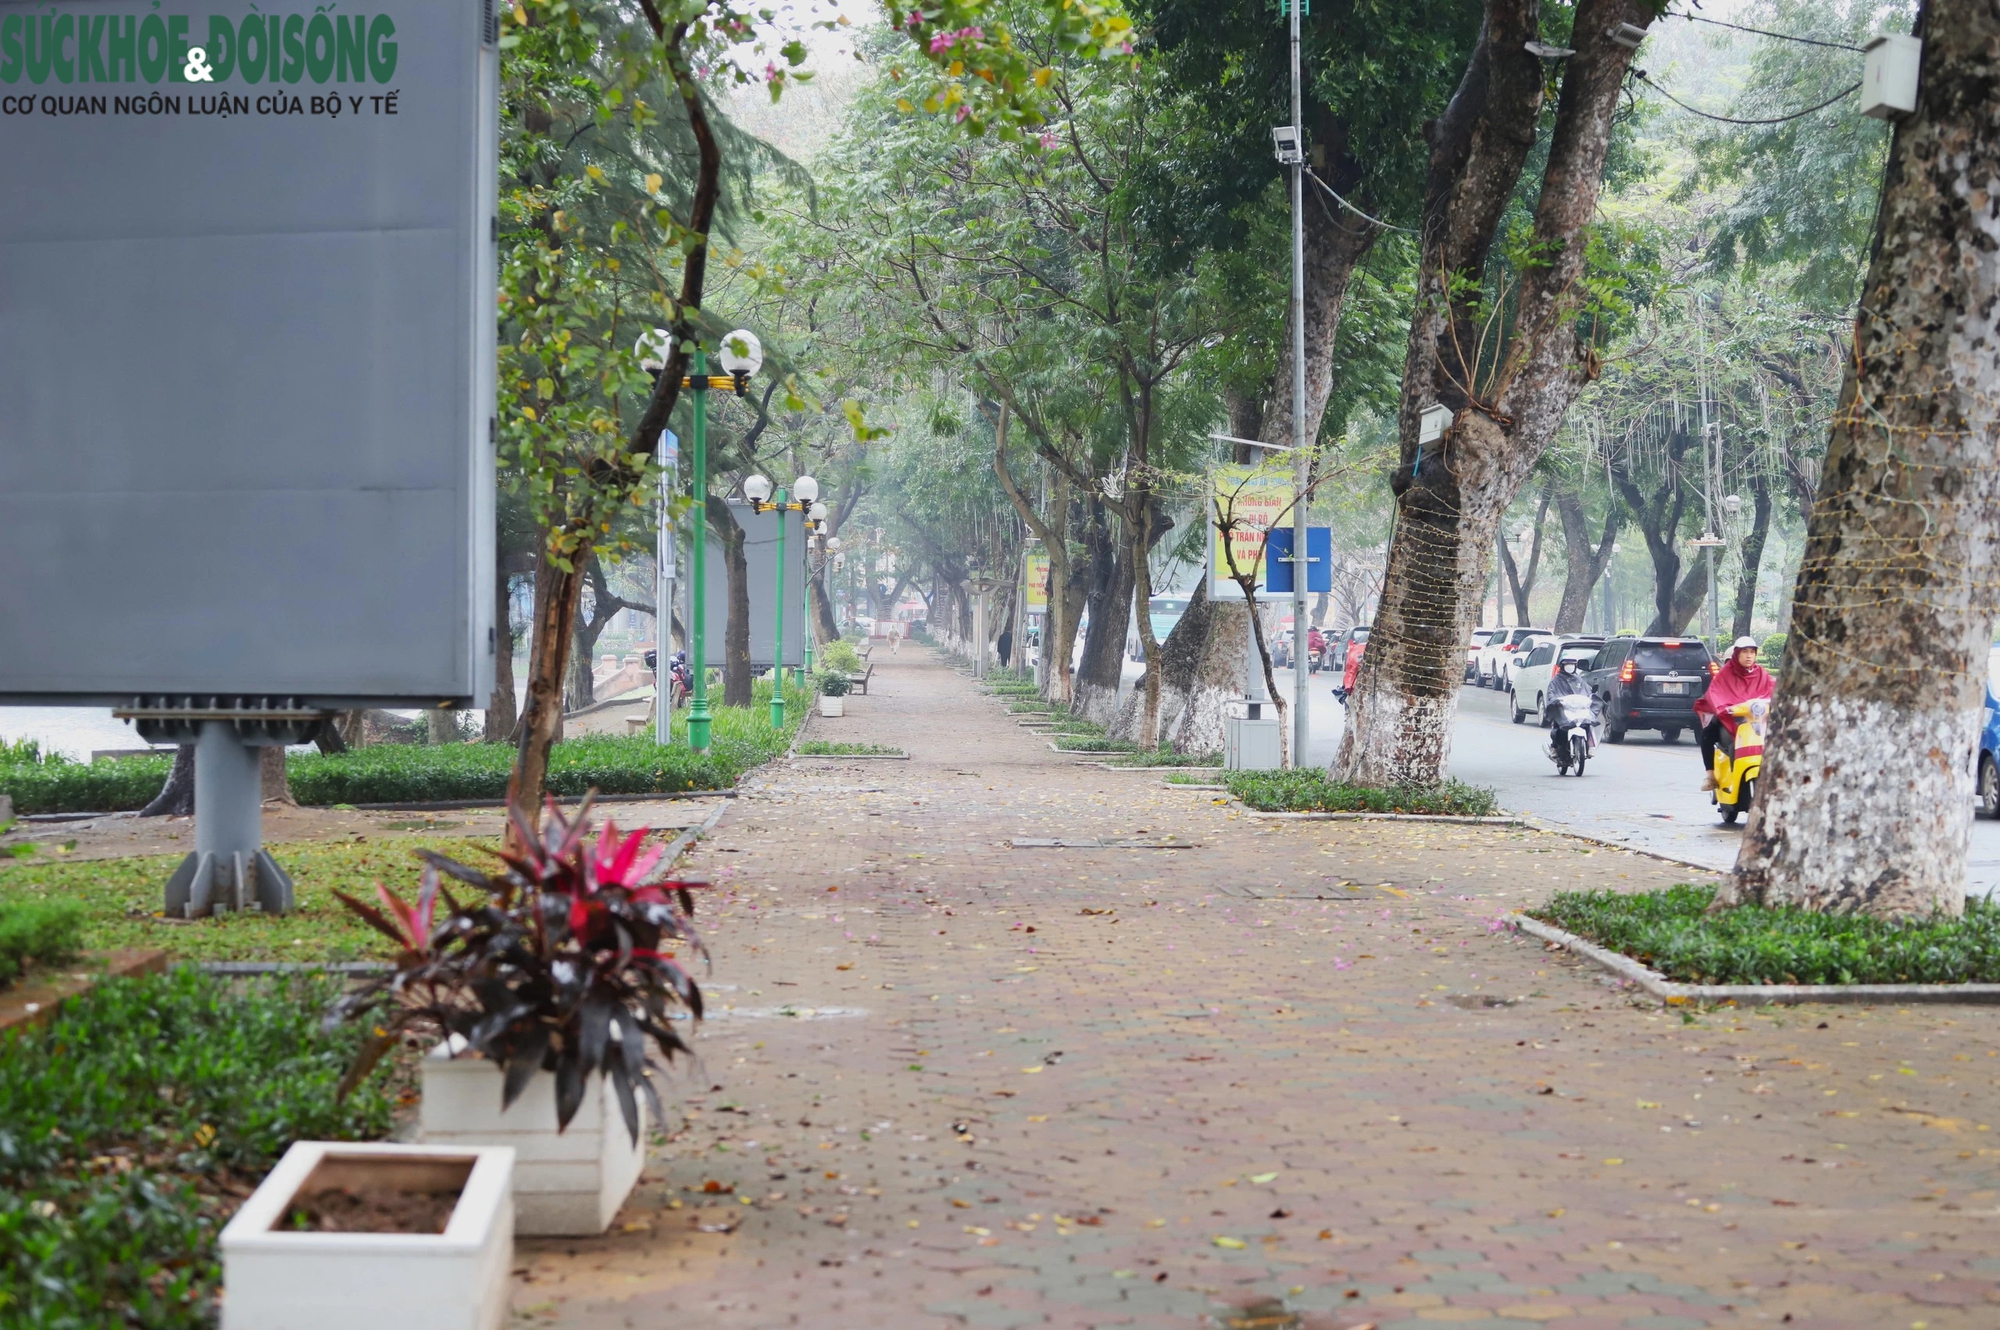 Hiện trạng khu vực hồ ở Hà Nội được đề xuất xây dựng 5 quảng trường- Ảnh 3.